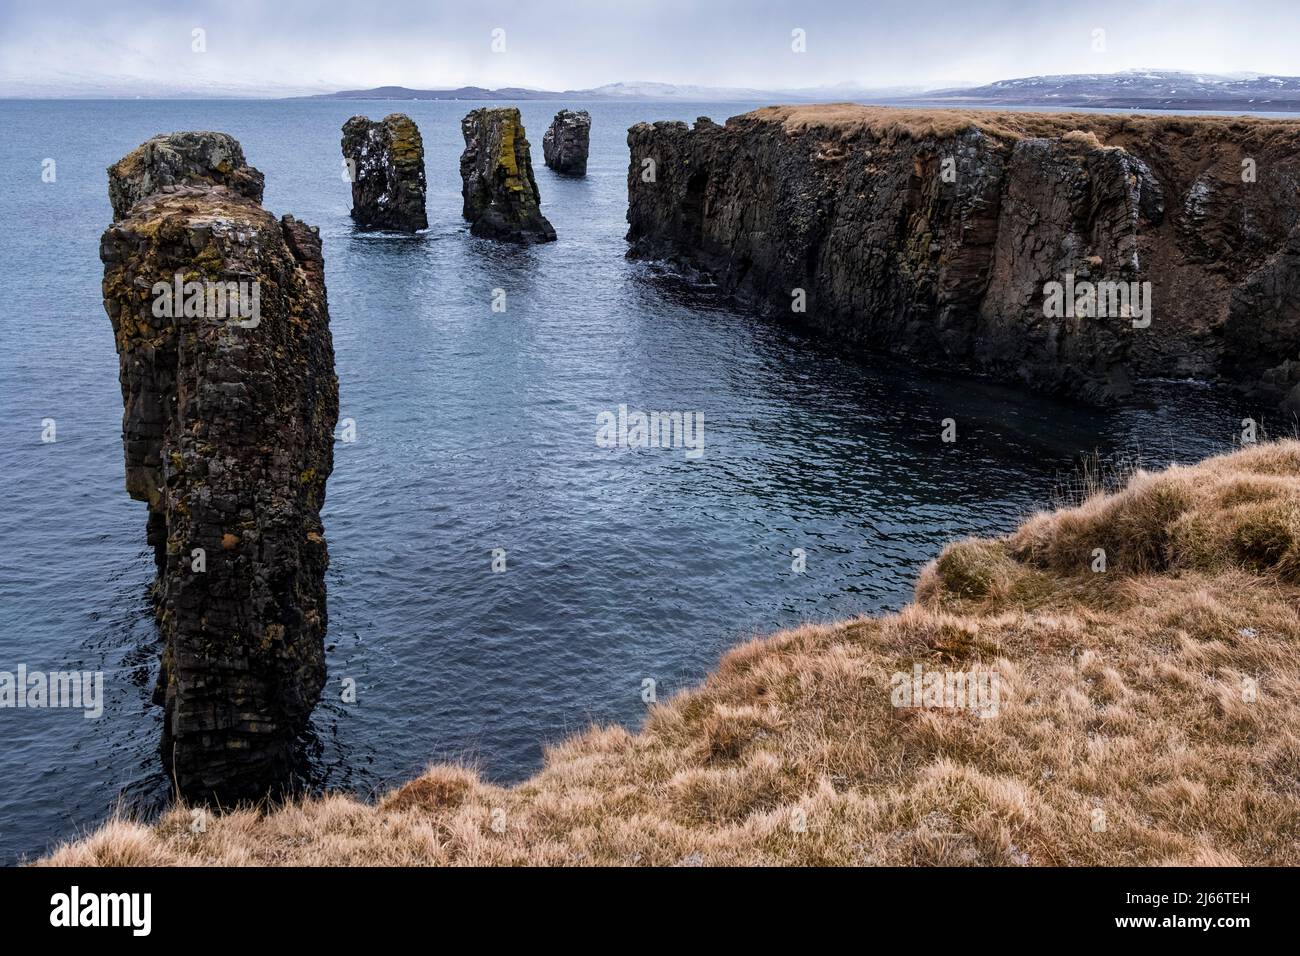 Halbinsel Fuglabjarganes bei Vopnafjörður / Ostisland. Vogelsfelsen, Steilküste, Ziel einer kurzen schönen Wanderung. Foto Stock